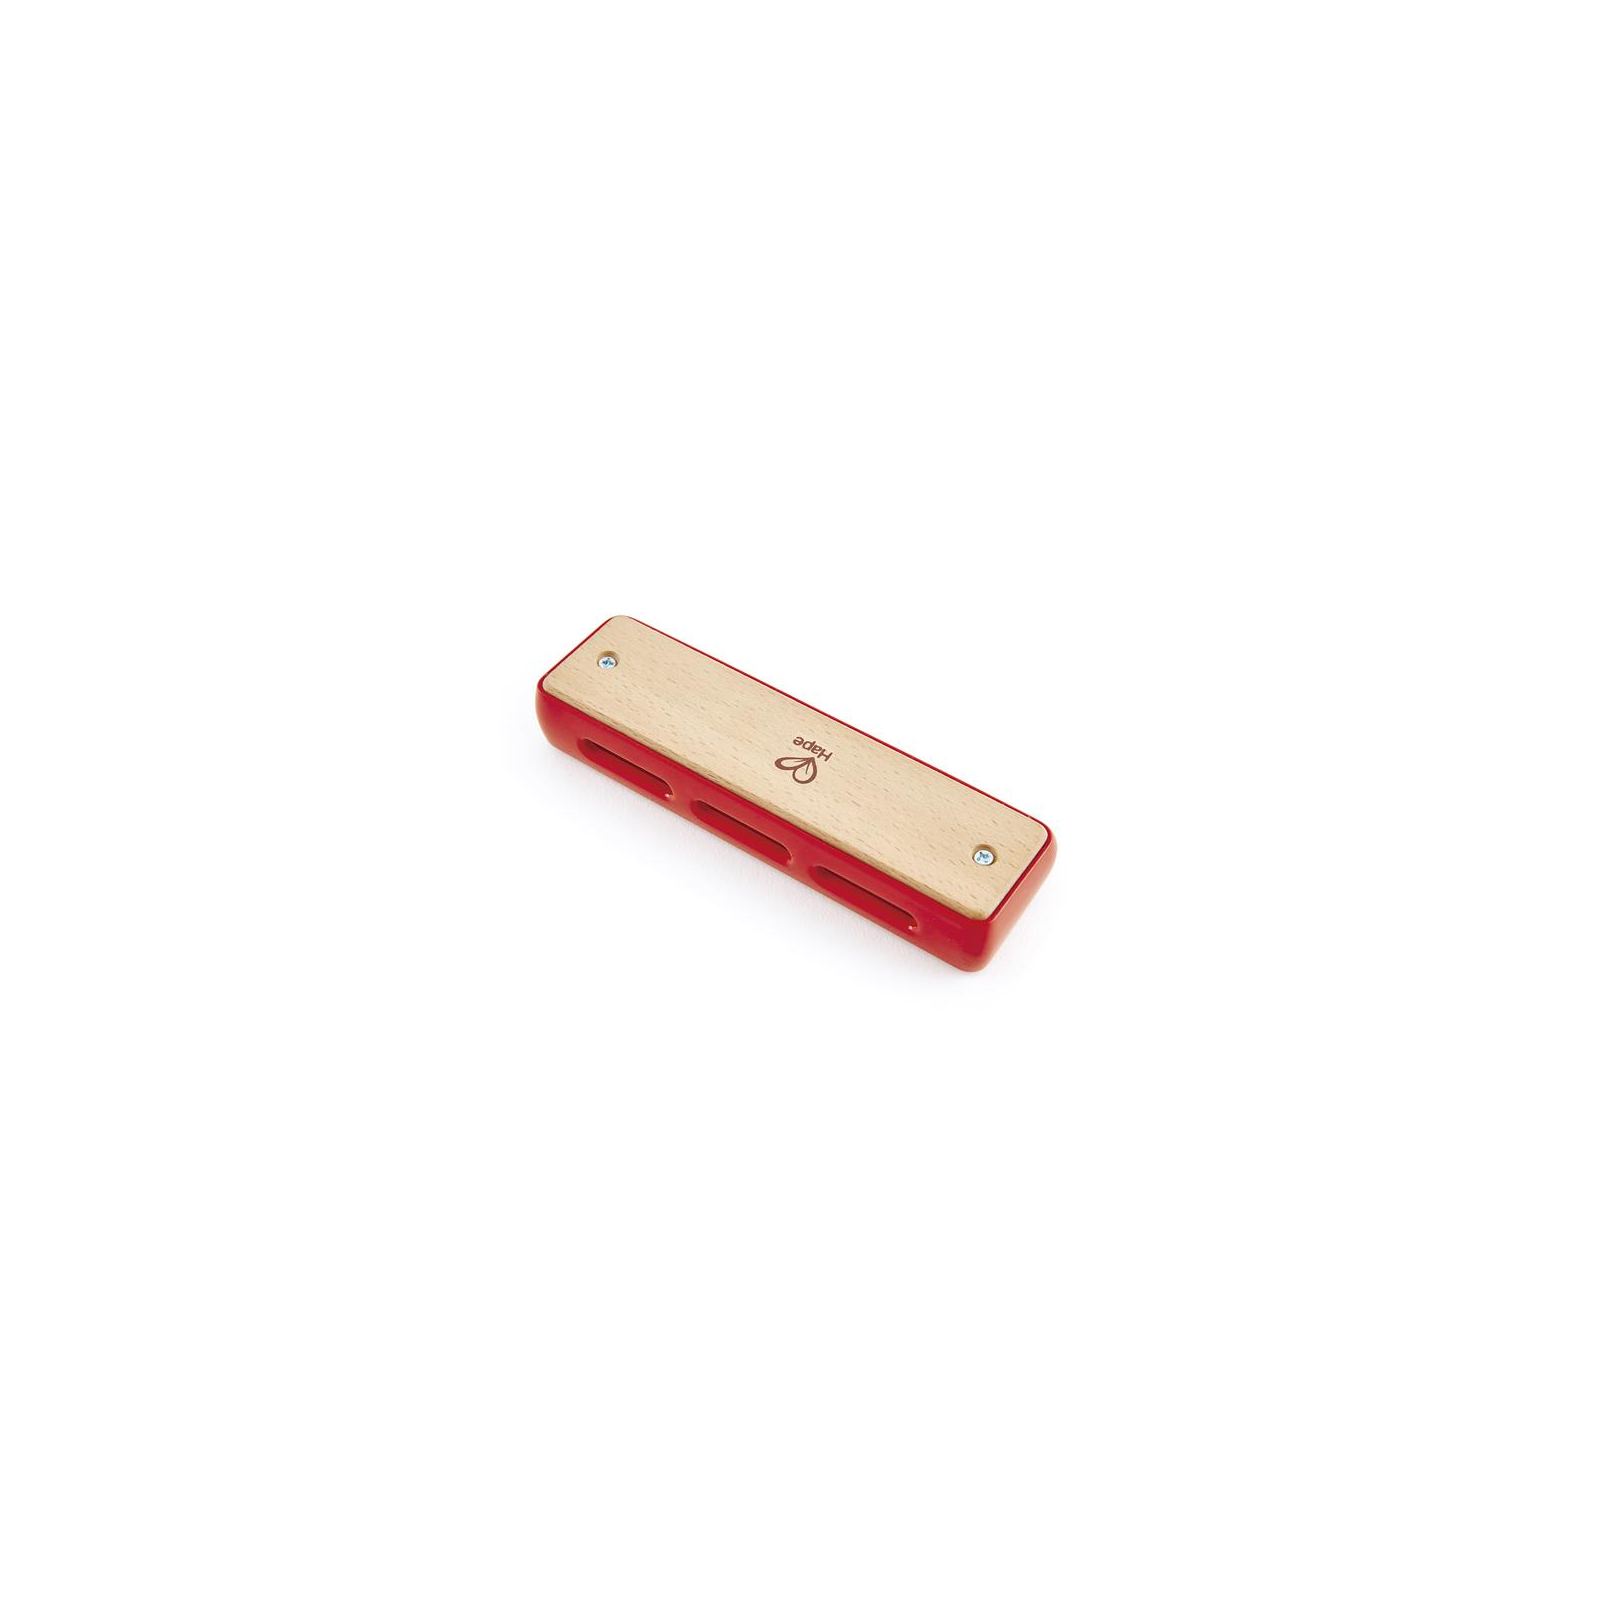 Музыкальная игрушка Hape деревянная гармоника Блюз (E0616) изображение 2